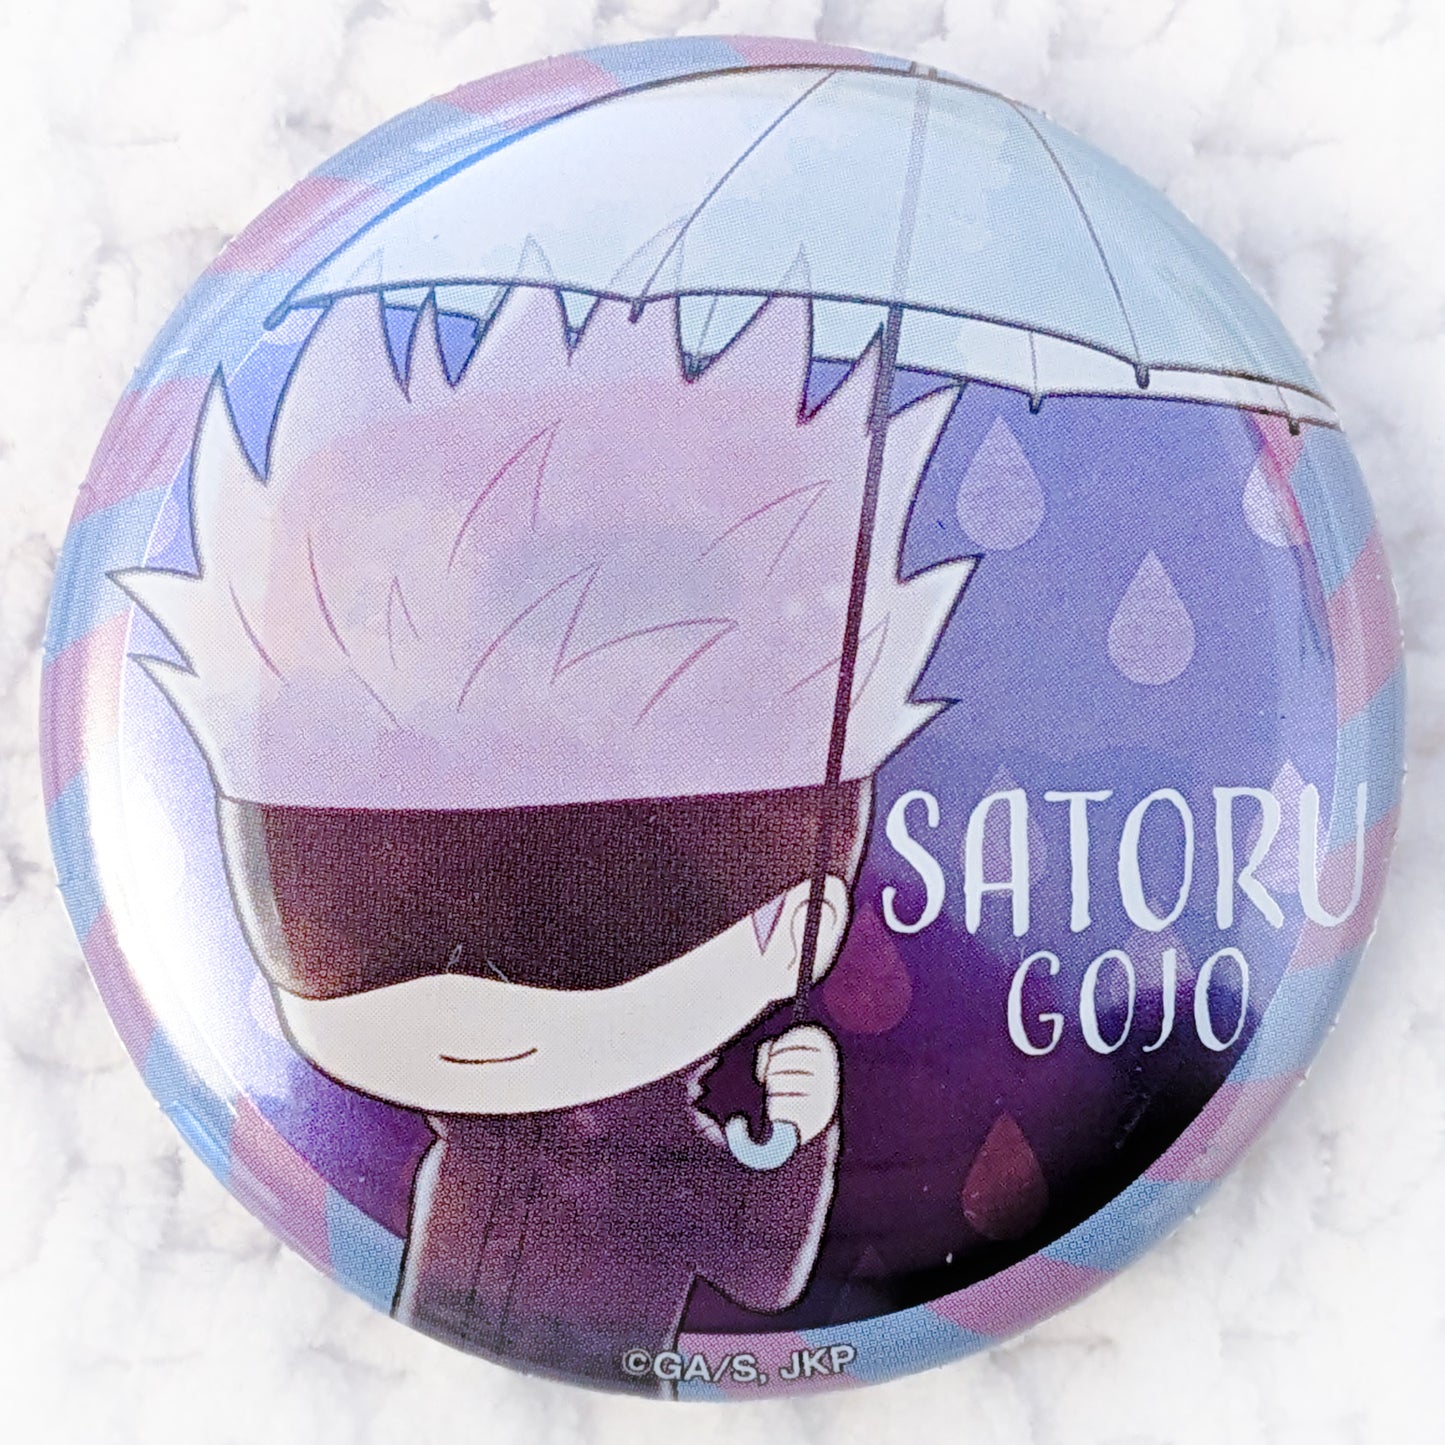 Satoru Gojo - Jujutsu Kaisen Anime Rainy Day Kasakko Pin Badge Button